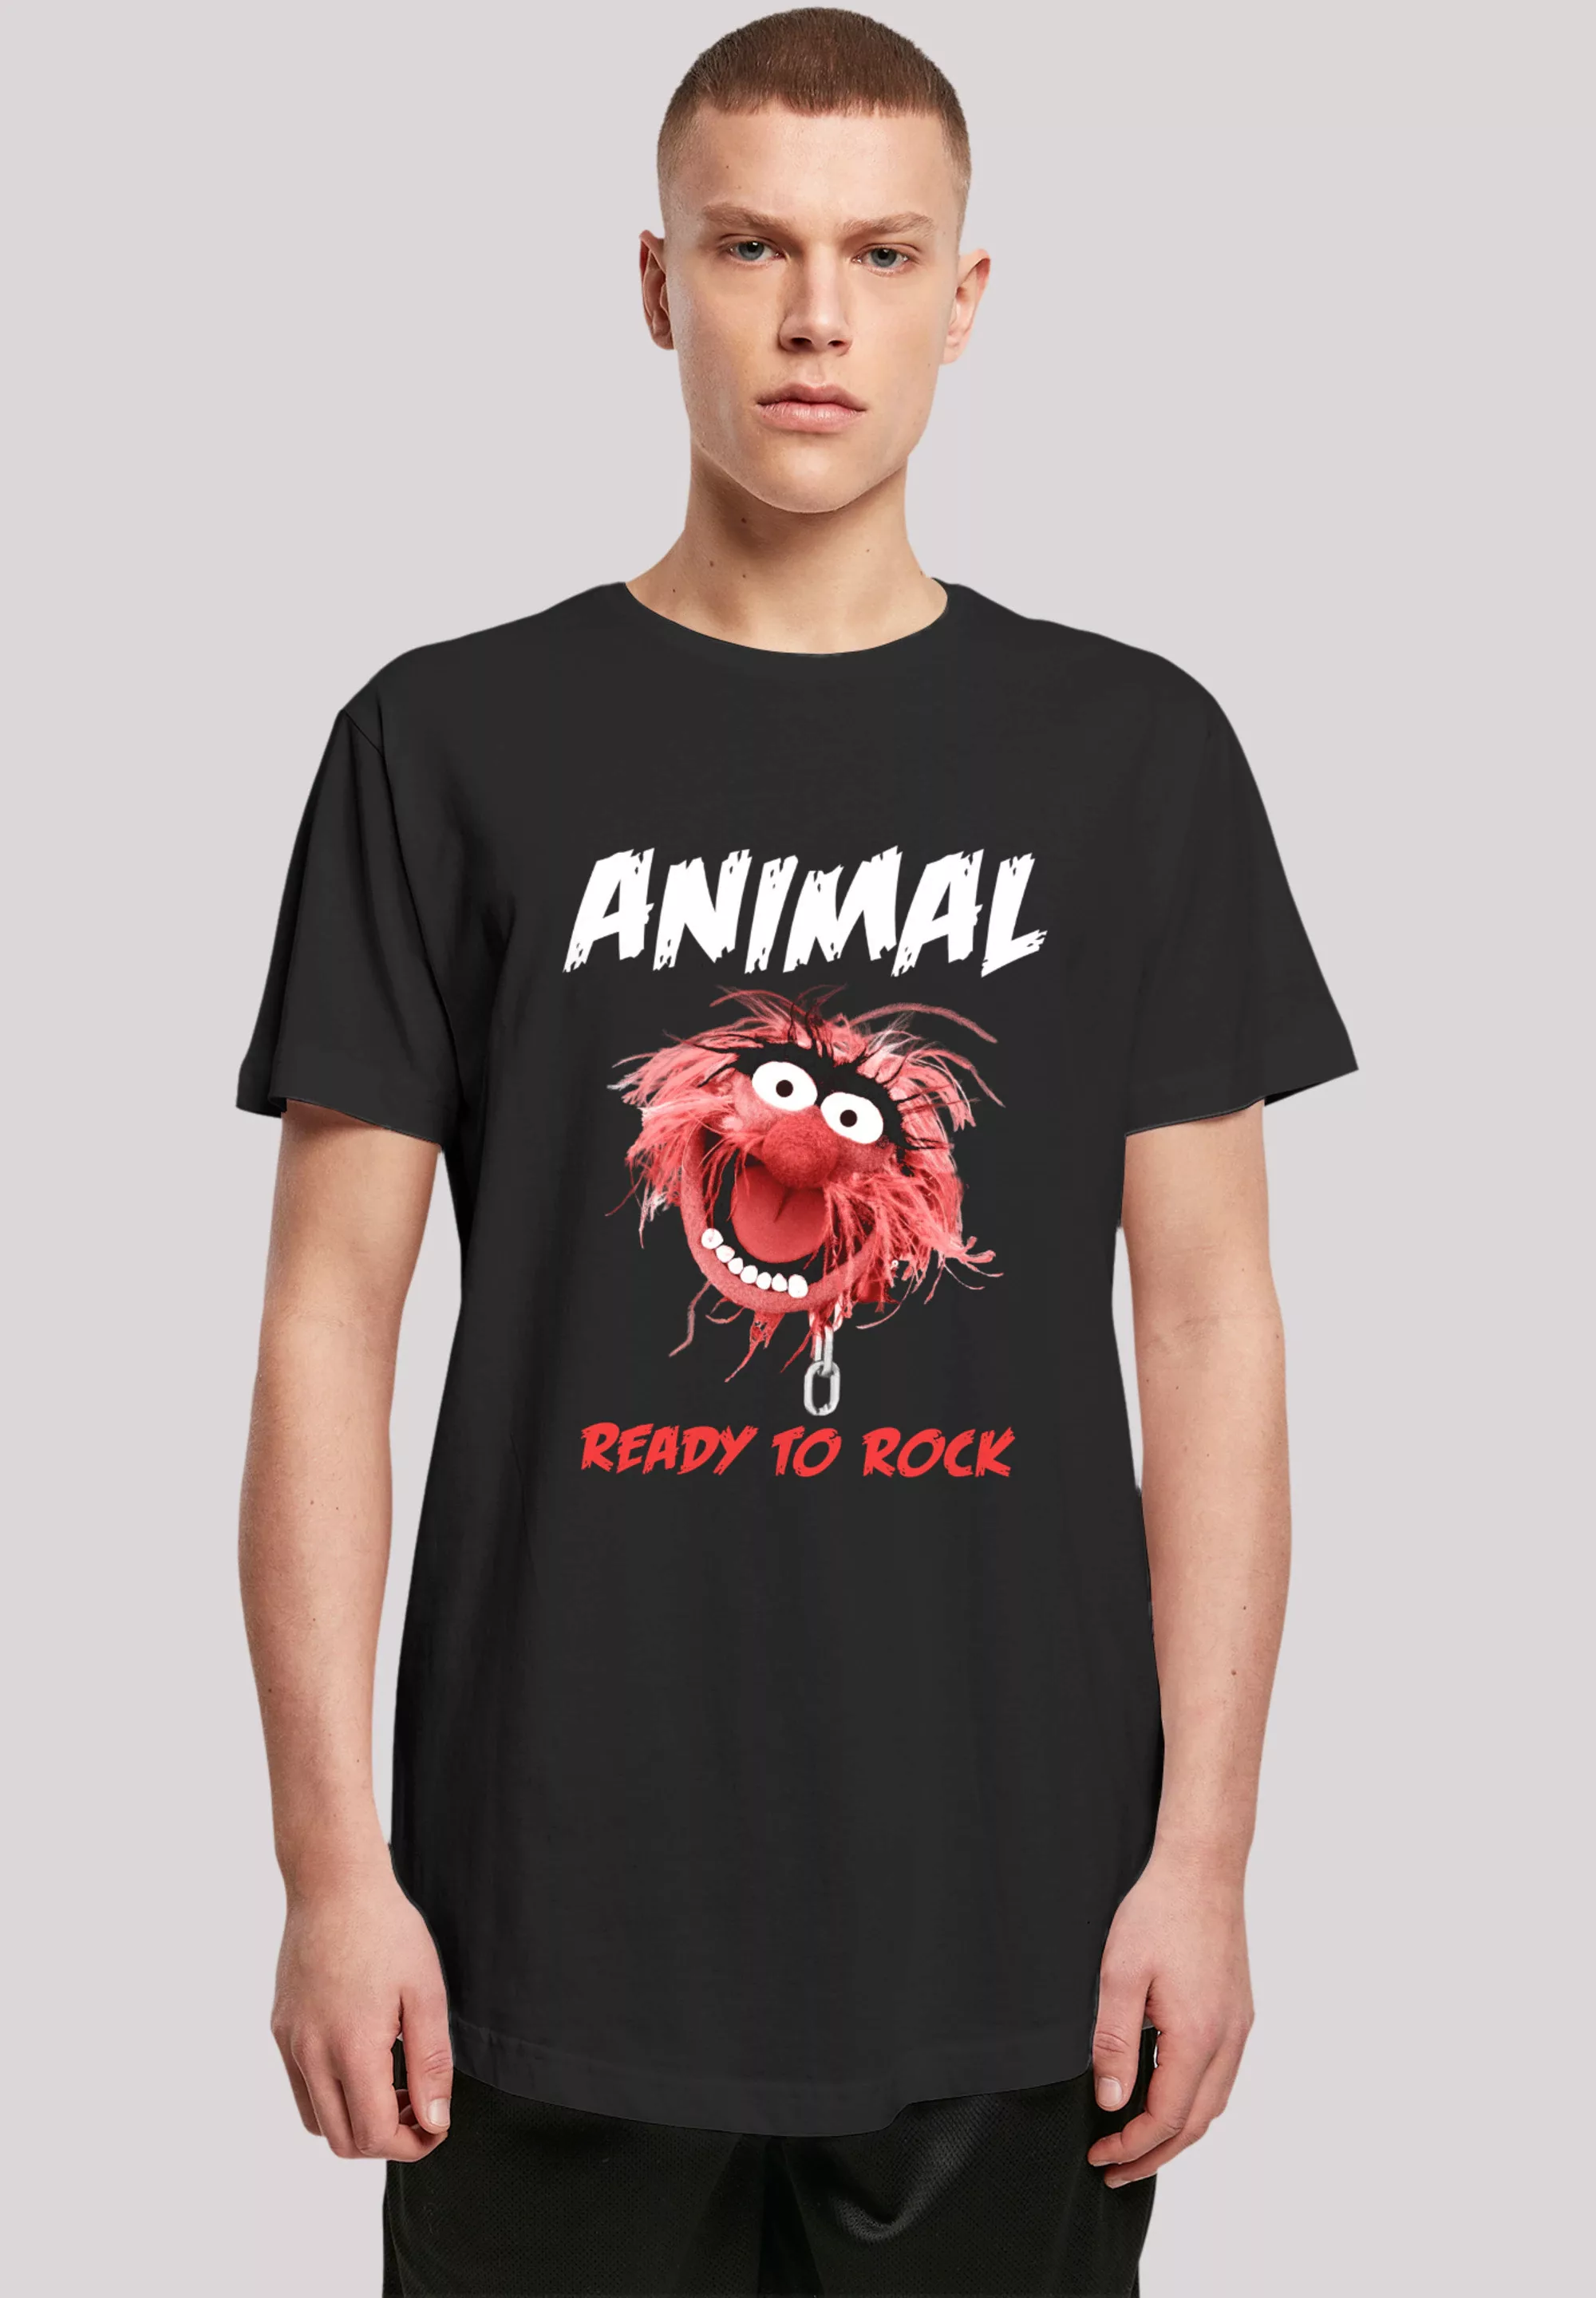 F4NT4STIC T-Shirt "Disney Muppets Ready To Rock", Premium Qualität günstig online kaufen